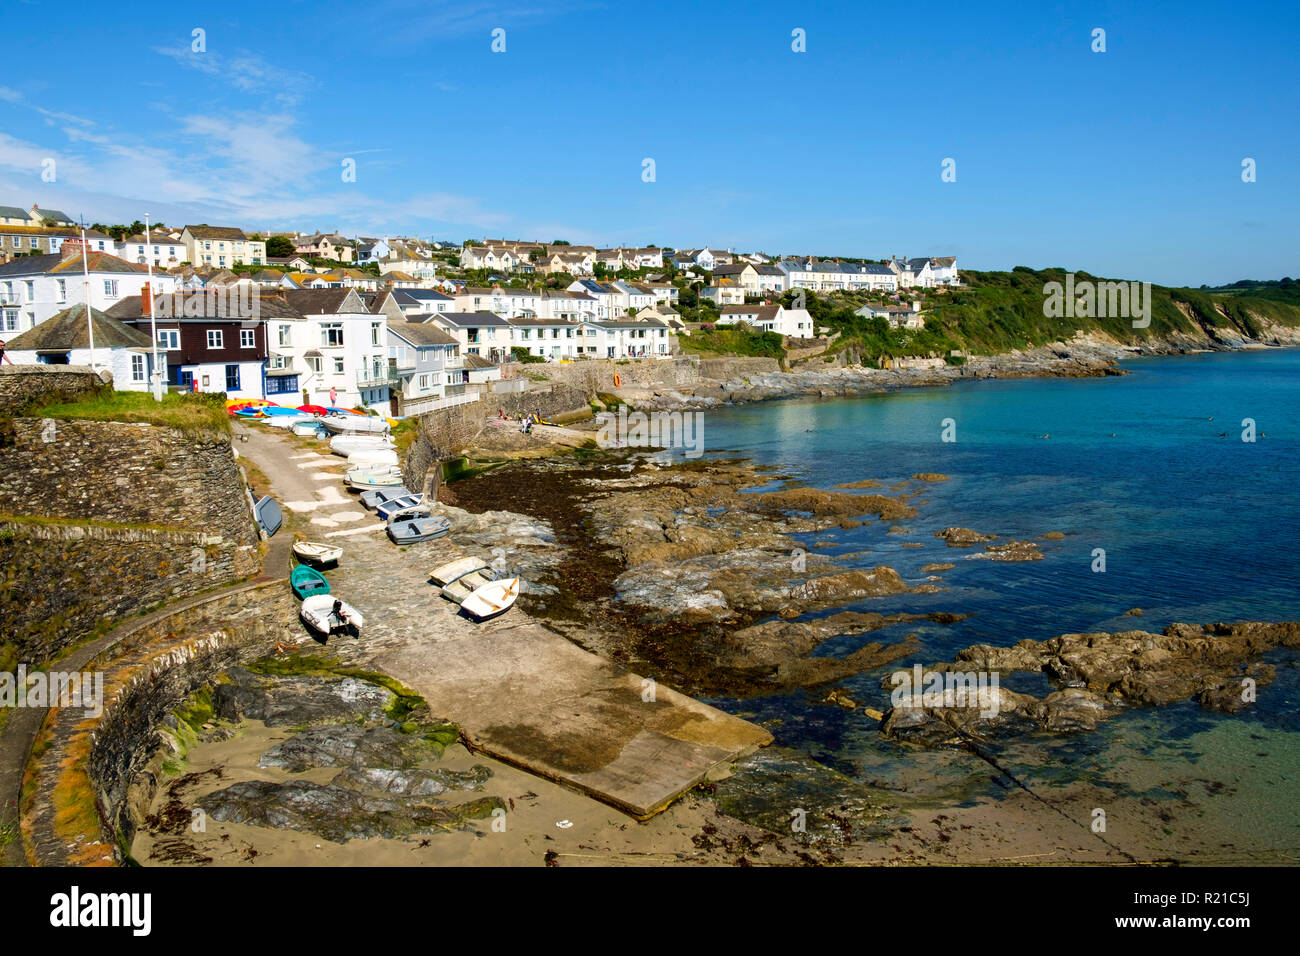 Portscatho, Regno Unito - 25 Luglio 2017: vista del porto e del litorale a Portscatho, Cornwall, Regno Unito su una bella mattina d'estate. Portscatho è una famiglia di famose località meta di vacanza. Foto Stock